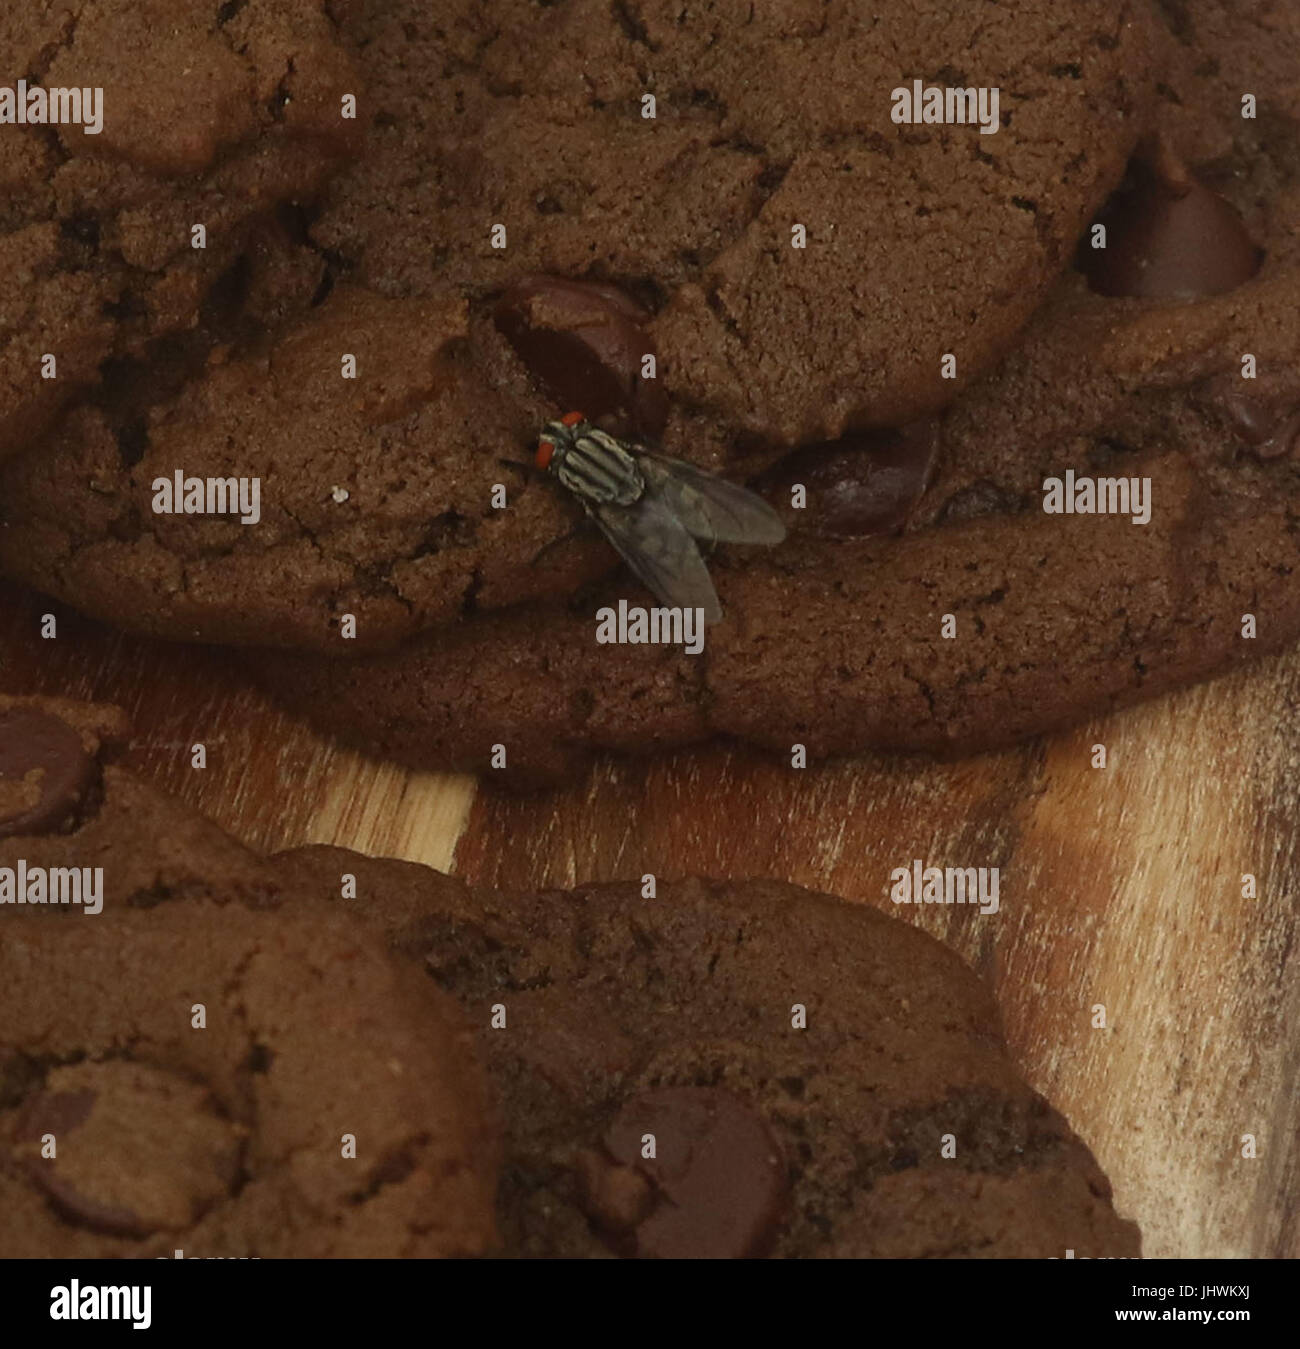 Housefly mangia doppio biscotti al cioccolato su una breadboard Foto Stock